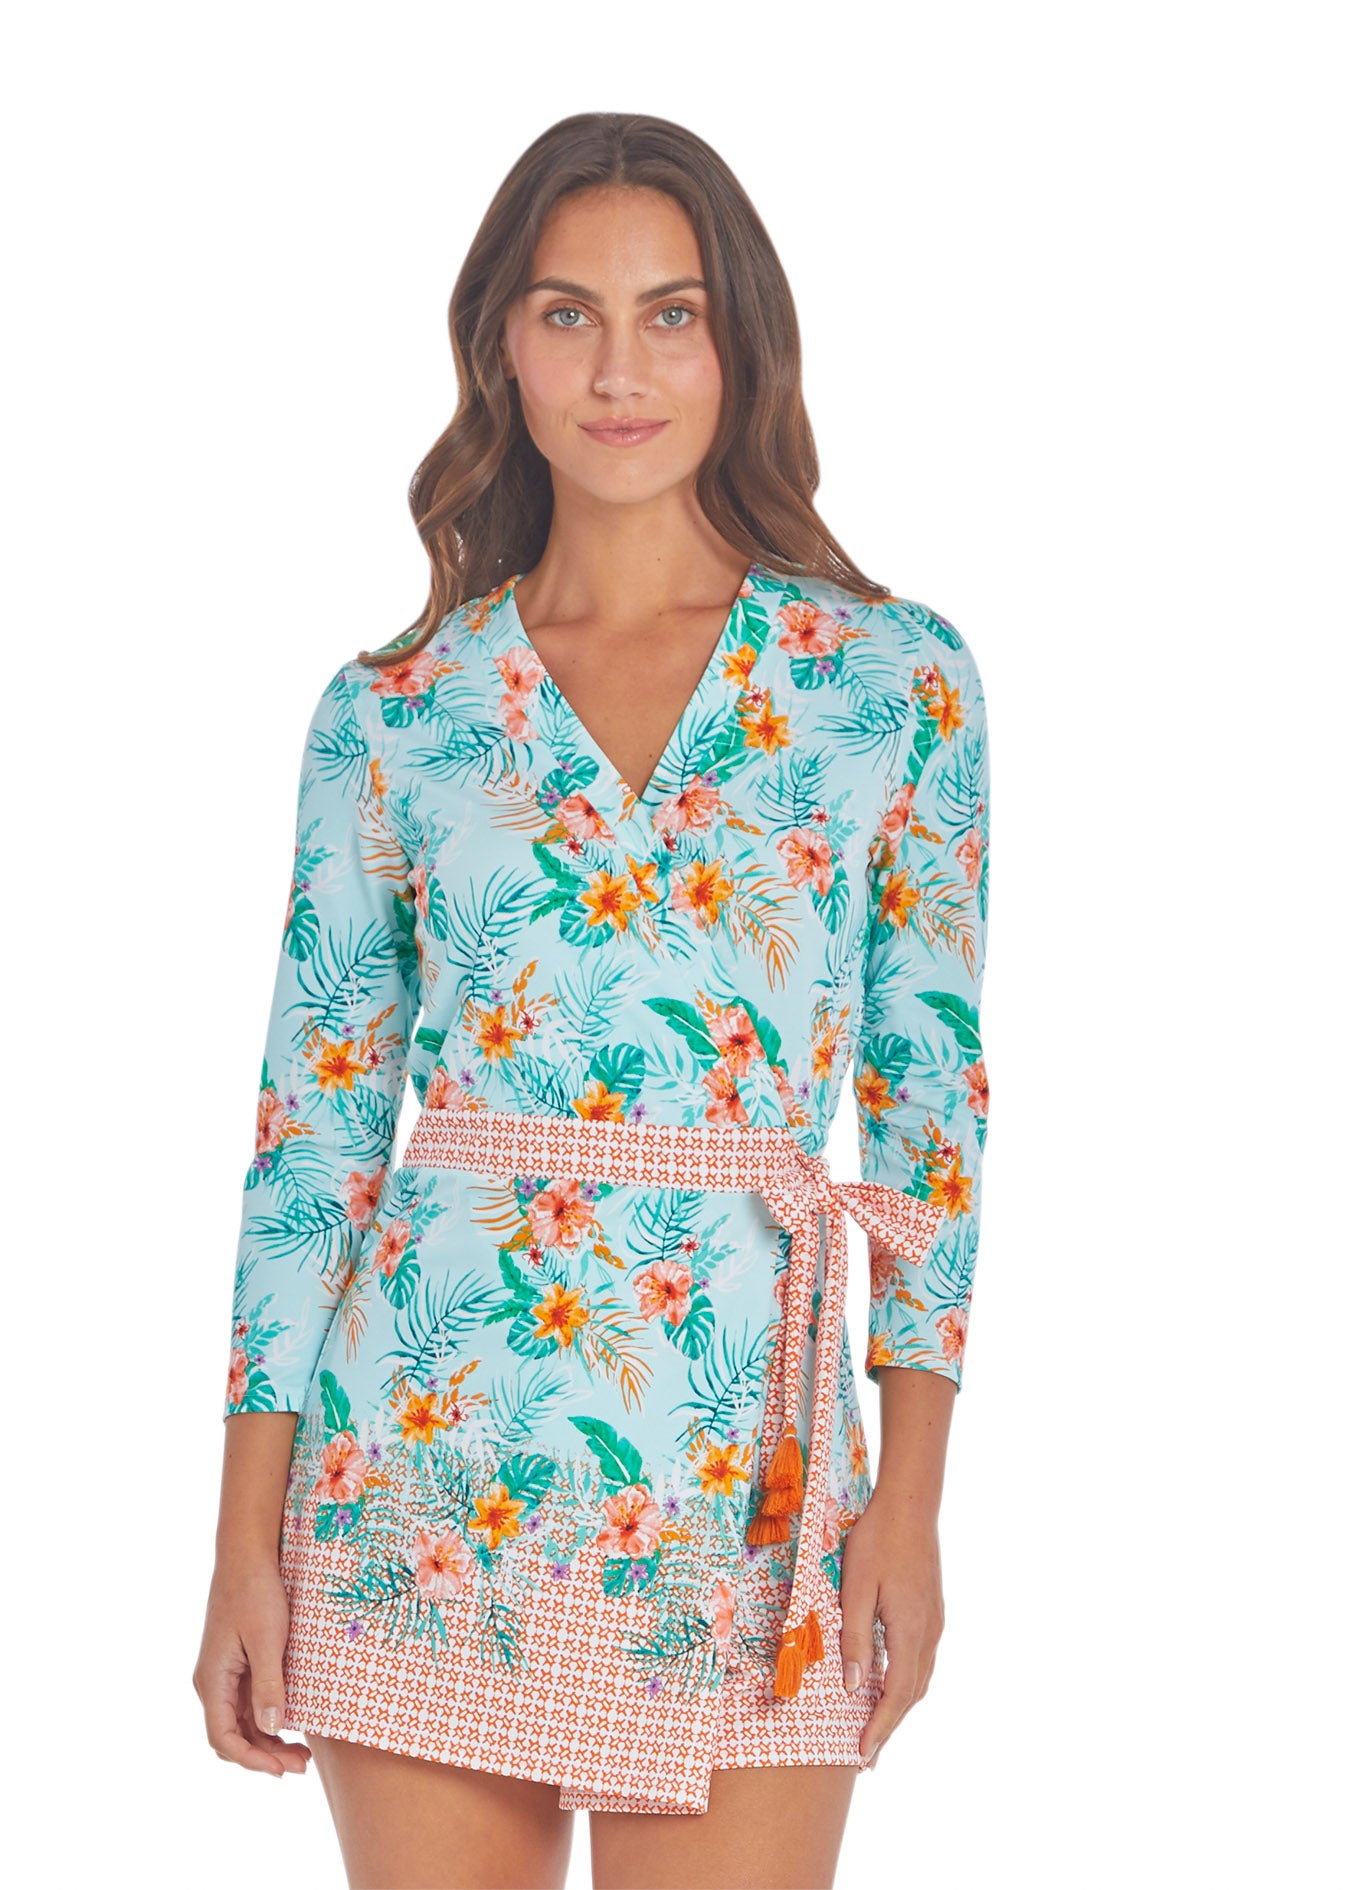 Aqua Citrus Wrap Romper Dress | Sun Protective Romper Dress